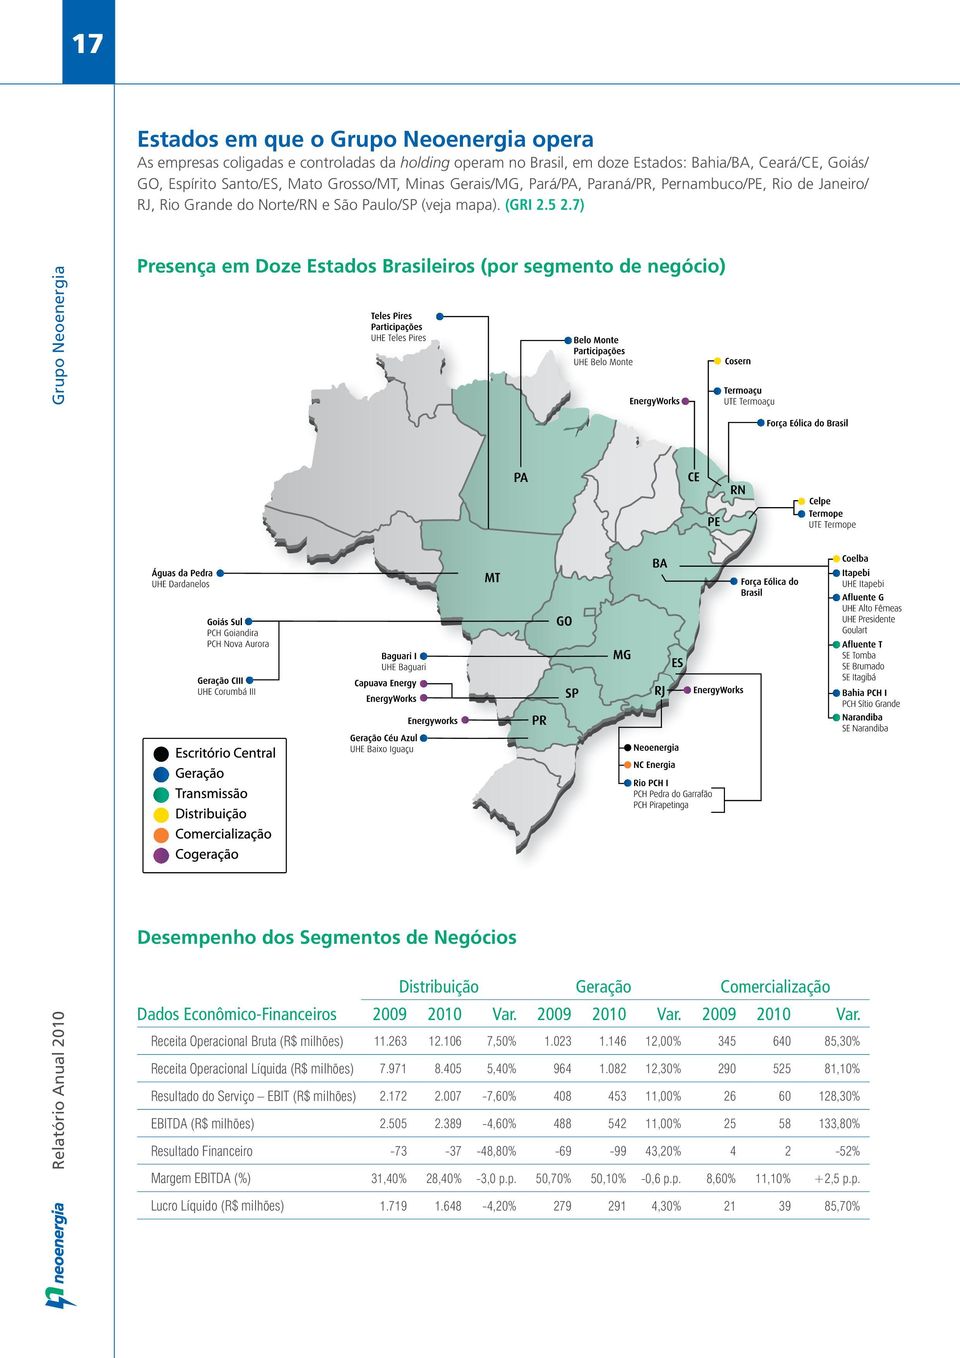 7) Grupo Neoenergia Presença em Doze Estados Brasileiros (por segmento de negócio) Desempenho dos Segmentos de Negócios Distribuição Geração Comercialização Dados Econômico-Financeiros 2009 2010 Var.